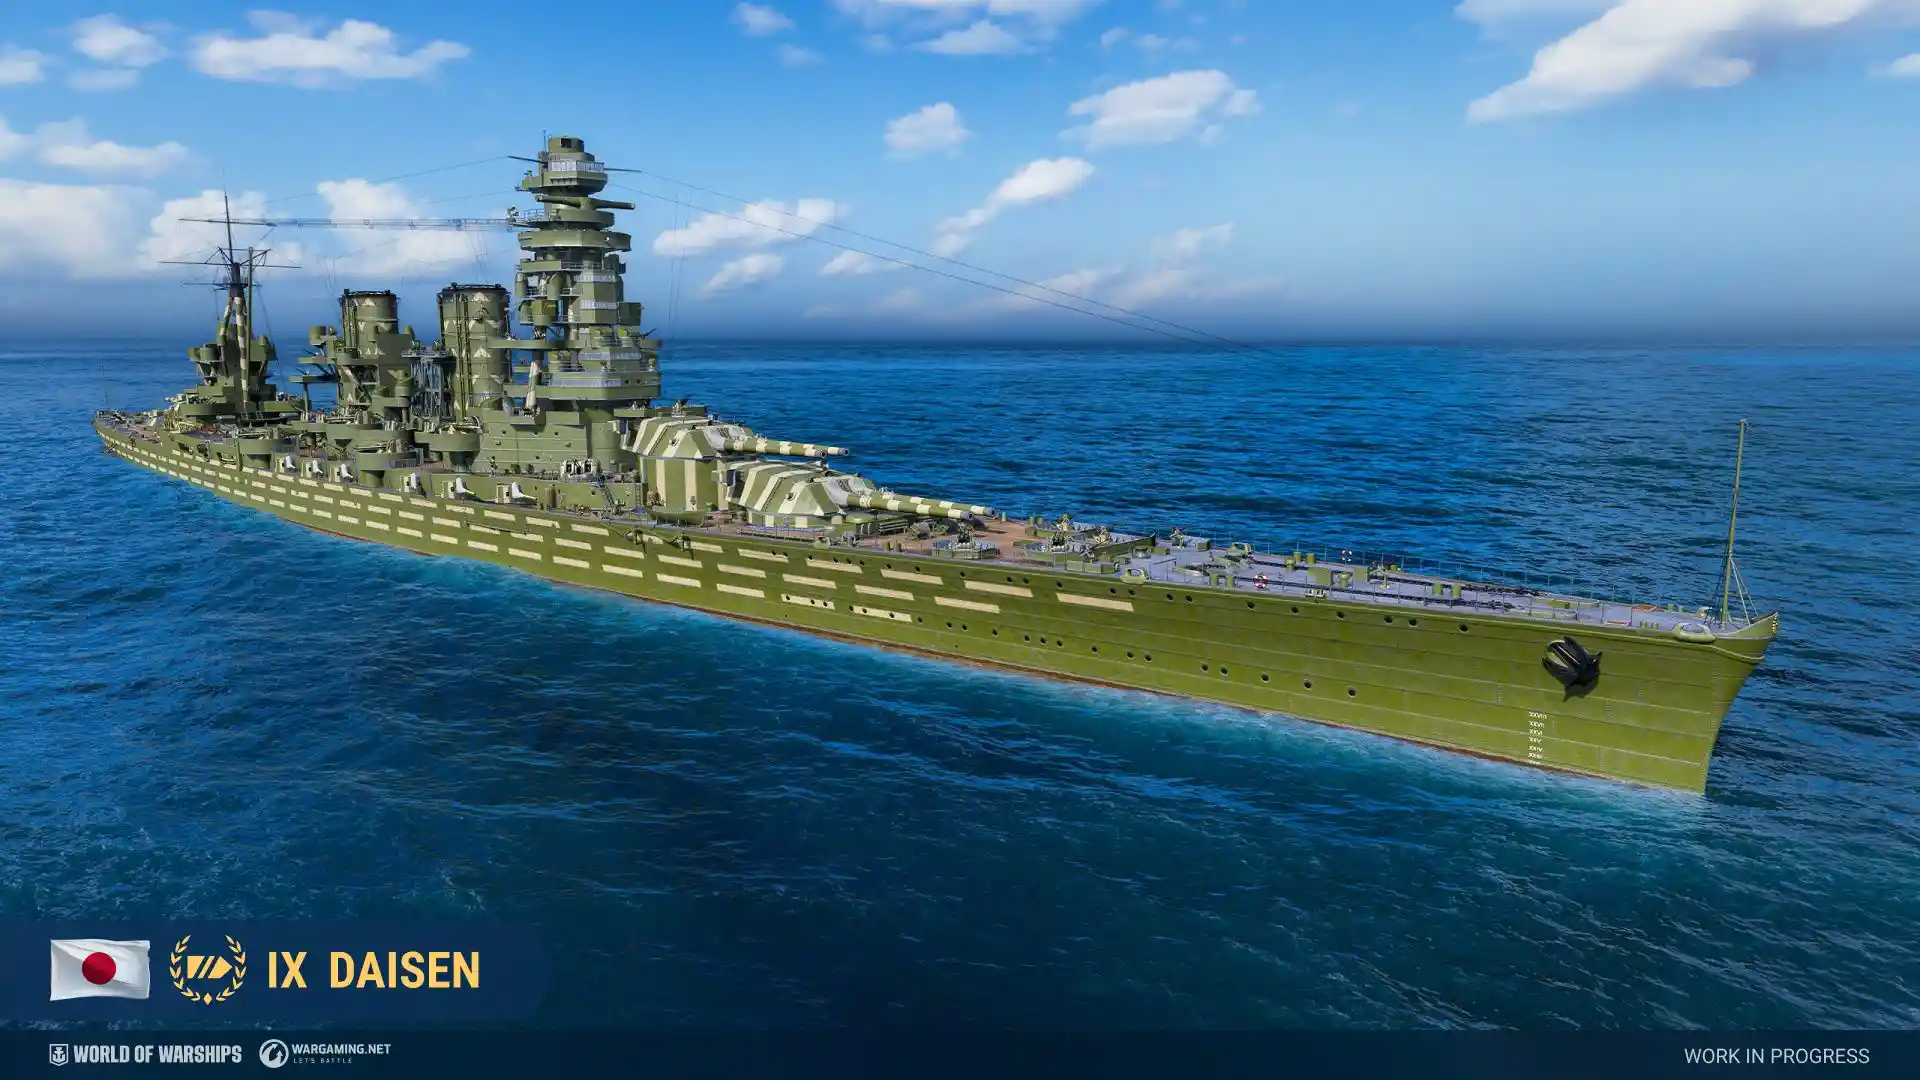 Daisen - World of Warships Wiki*